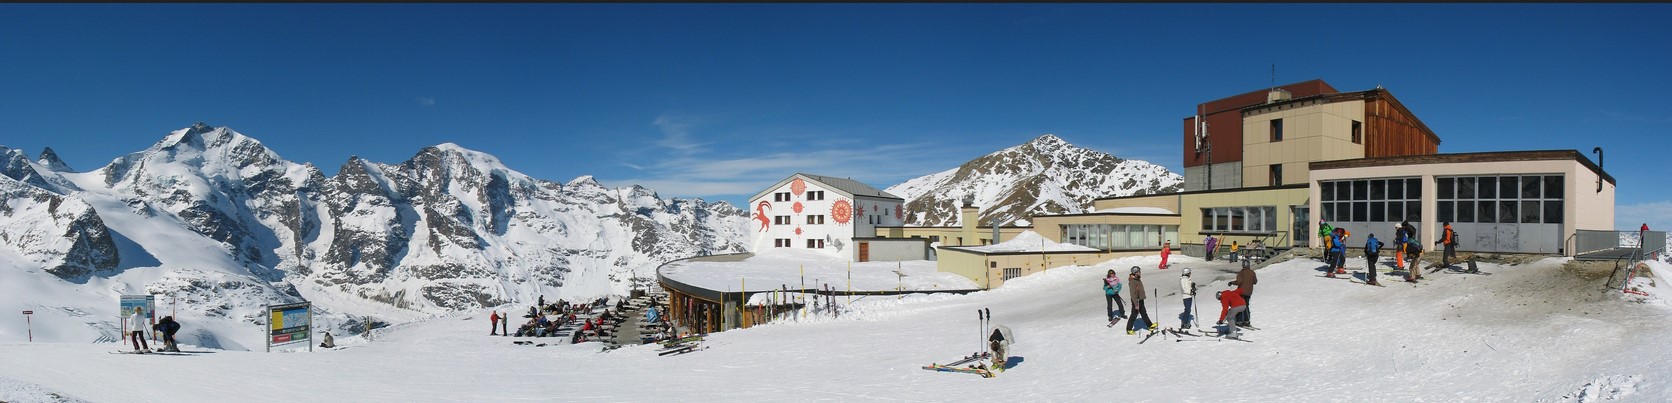 offene skigebiete schweiz